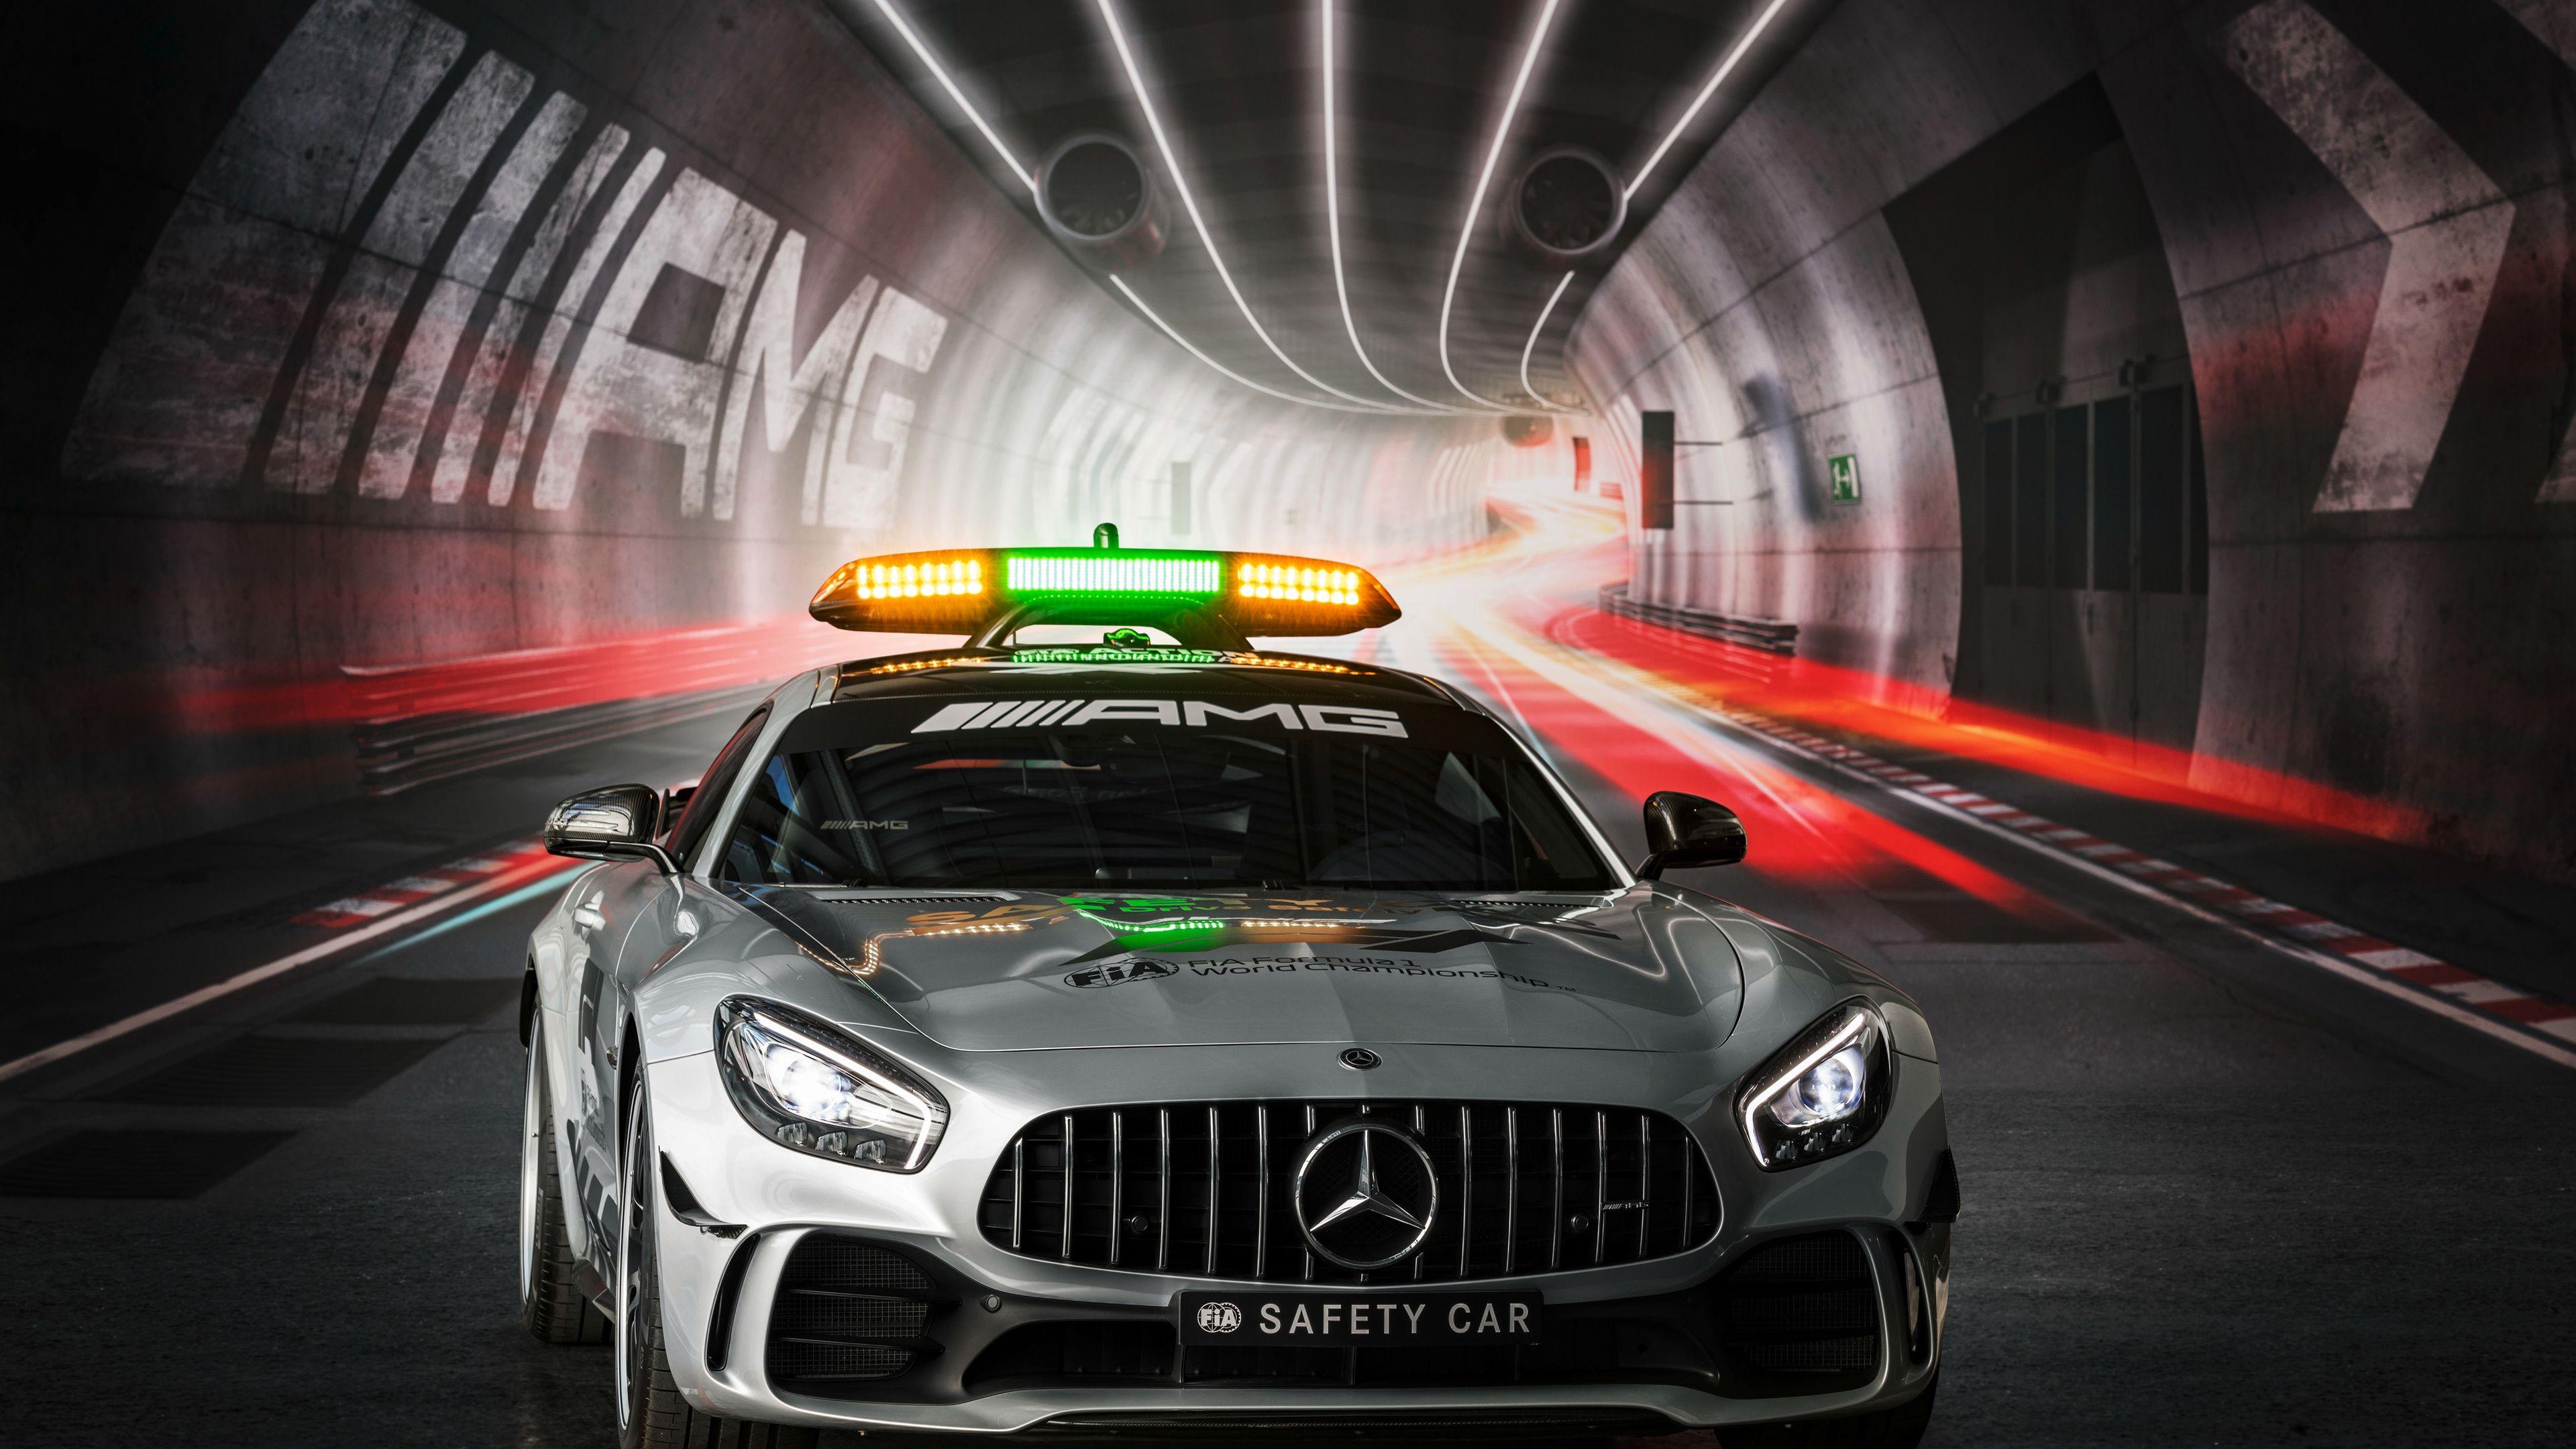 Mercedes AMG GT R F1 Safety Car mercedes wallpaper, mercedes amg